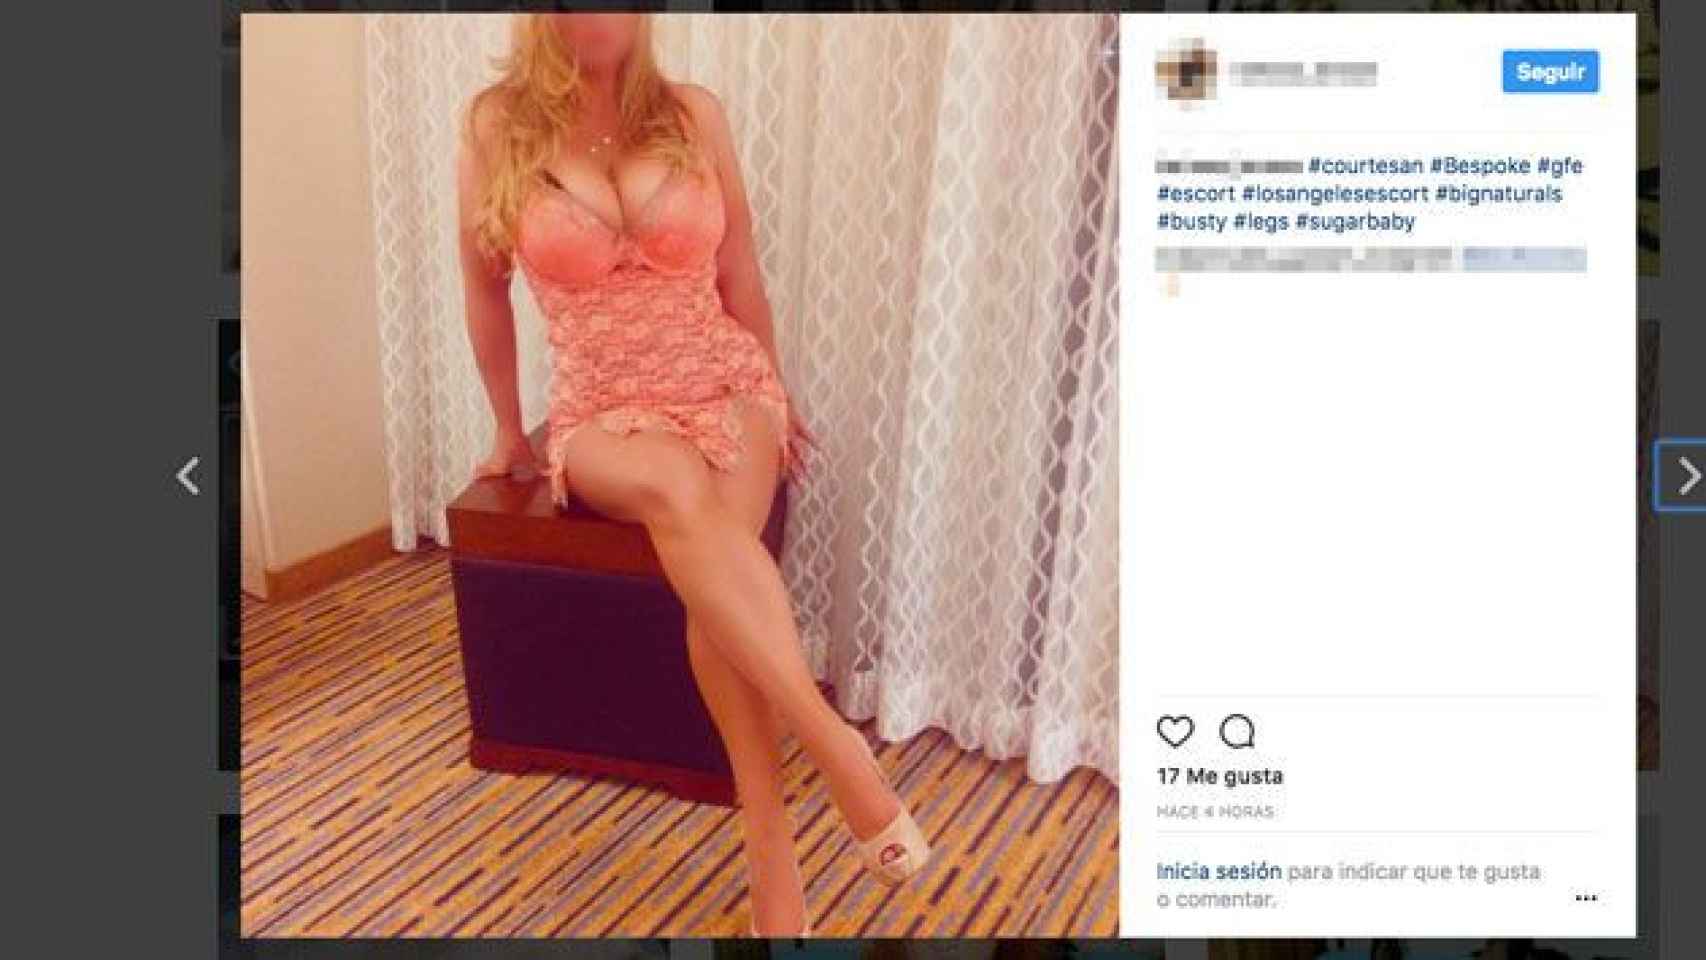 Una prostituta publica una foto suya en Instagram con 'hashtags' relacionados a su profesión / CG